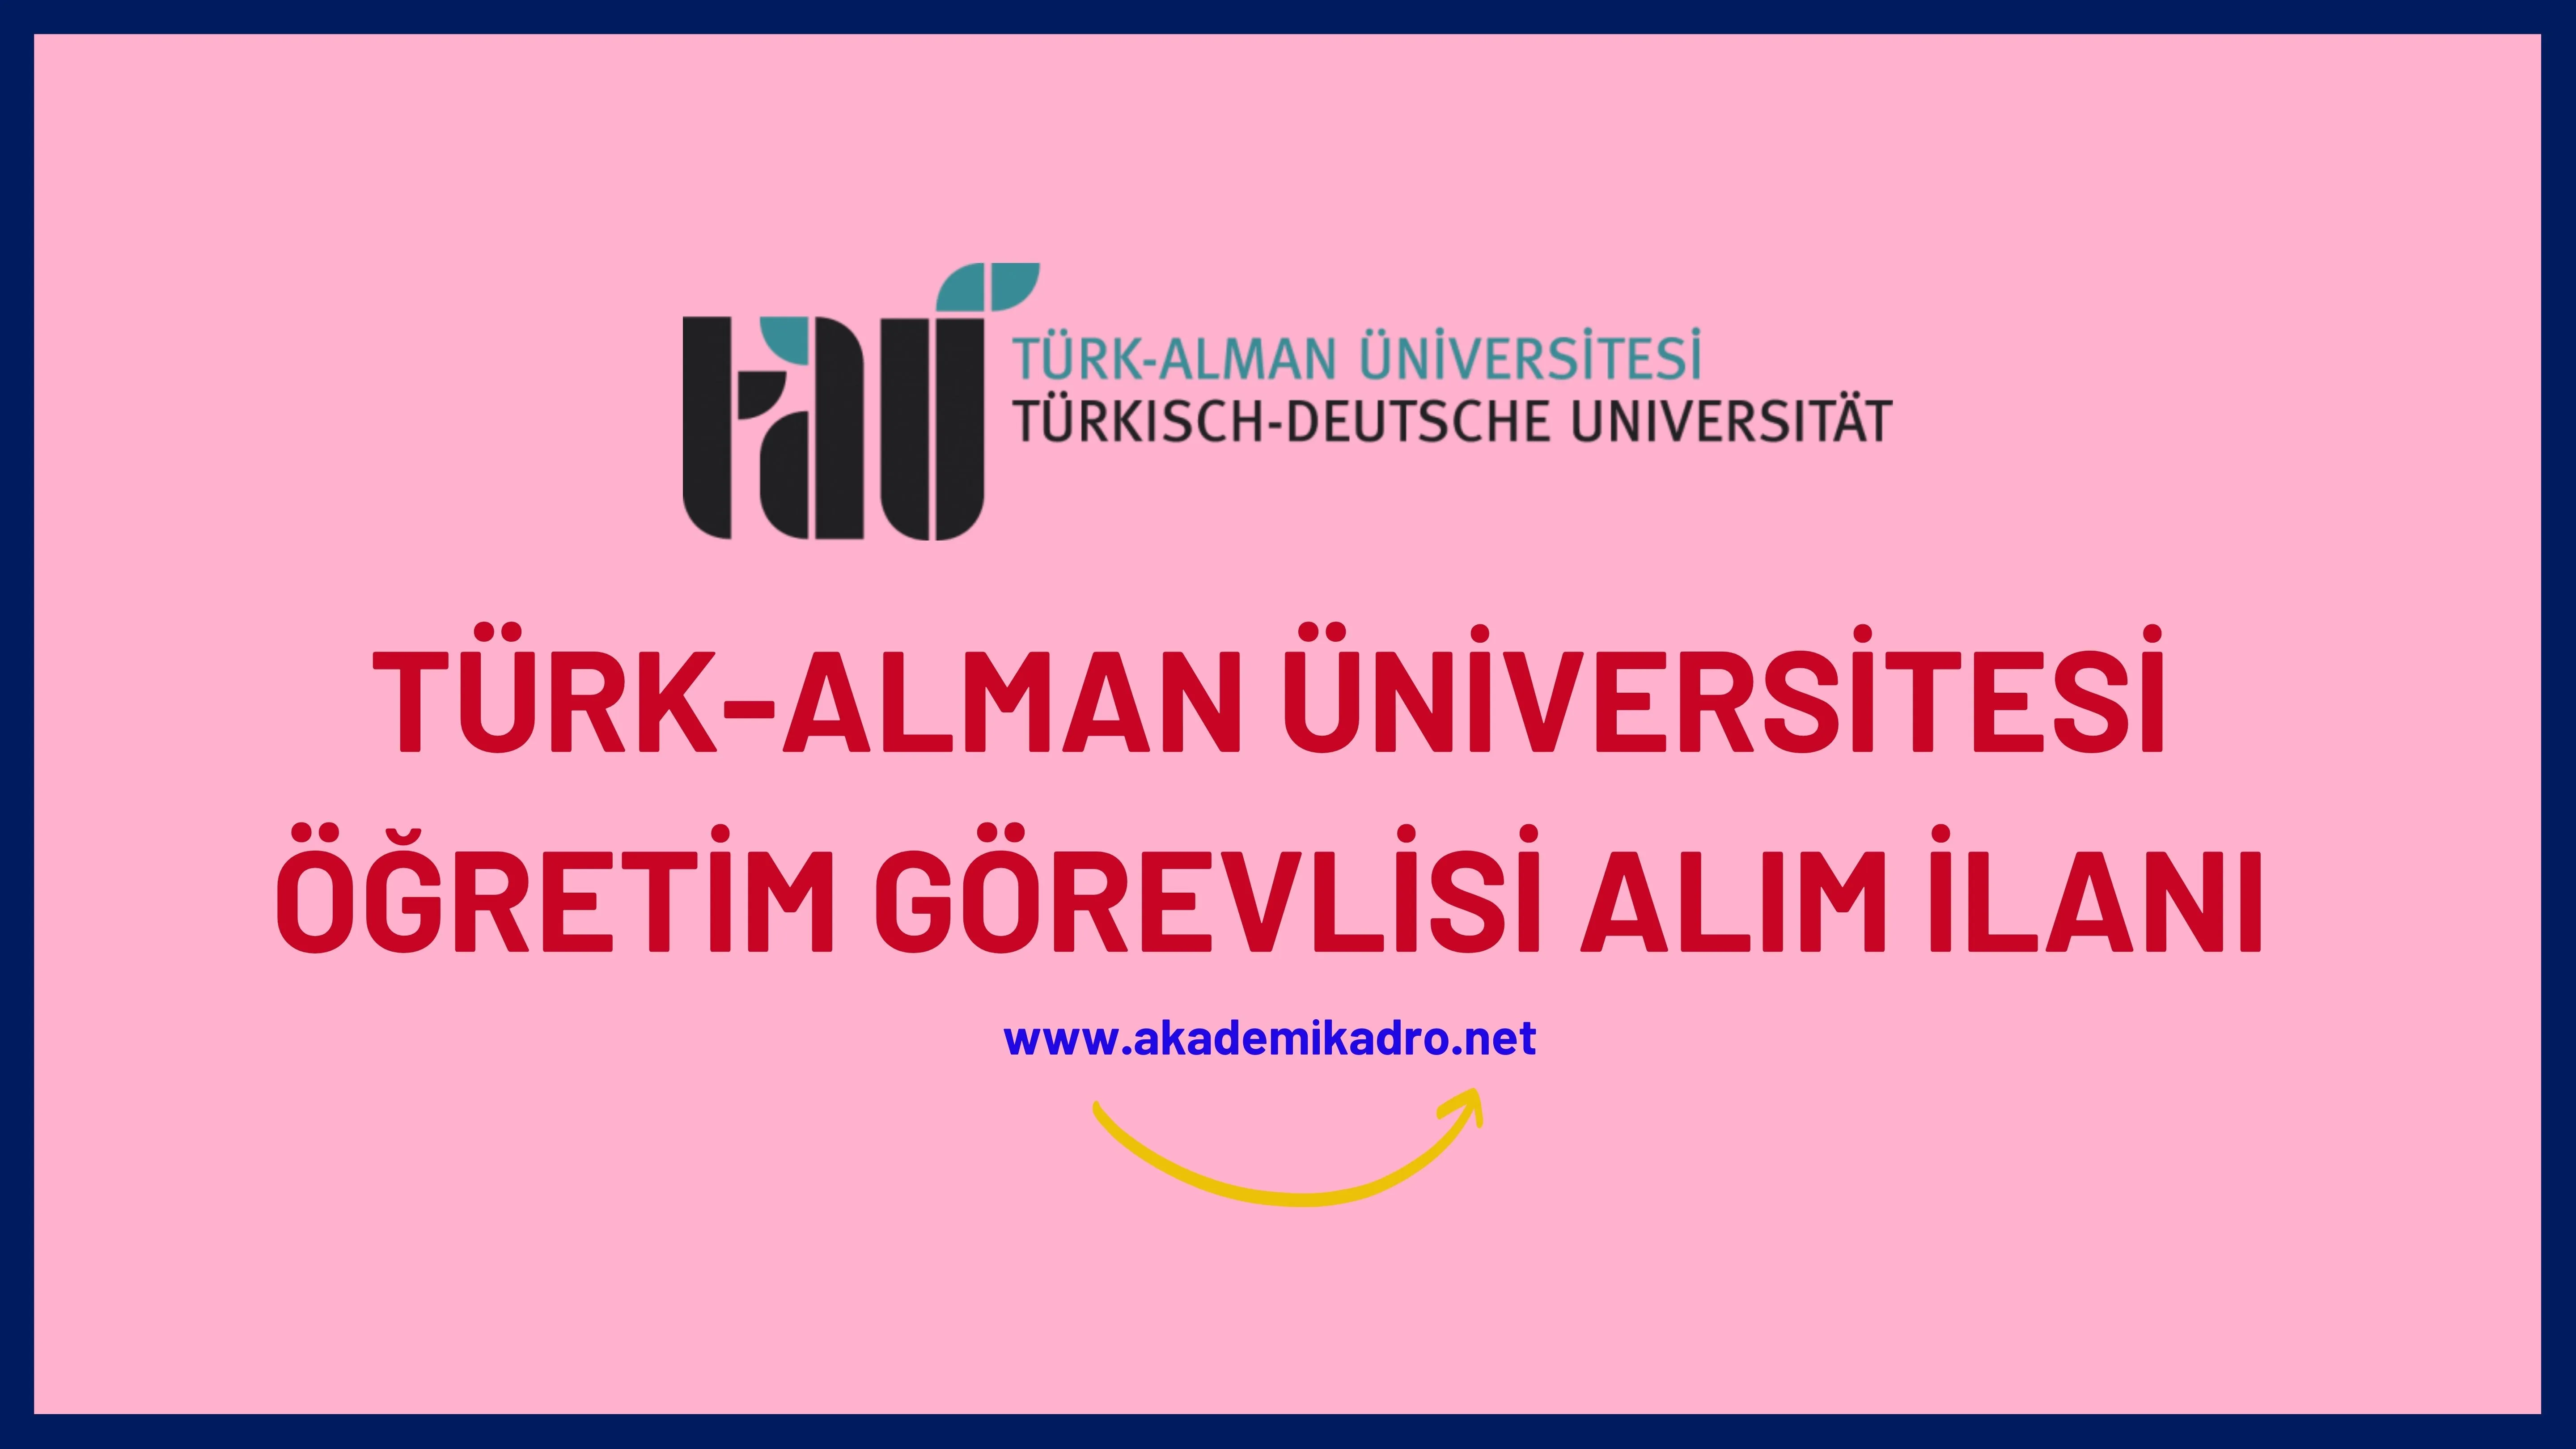 Türk Alman Üniversitesi Öğretim görevlisi alacaktır. Son başvuru tarihi 14 Kasım 2022.